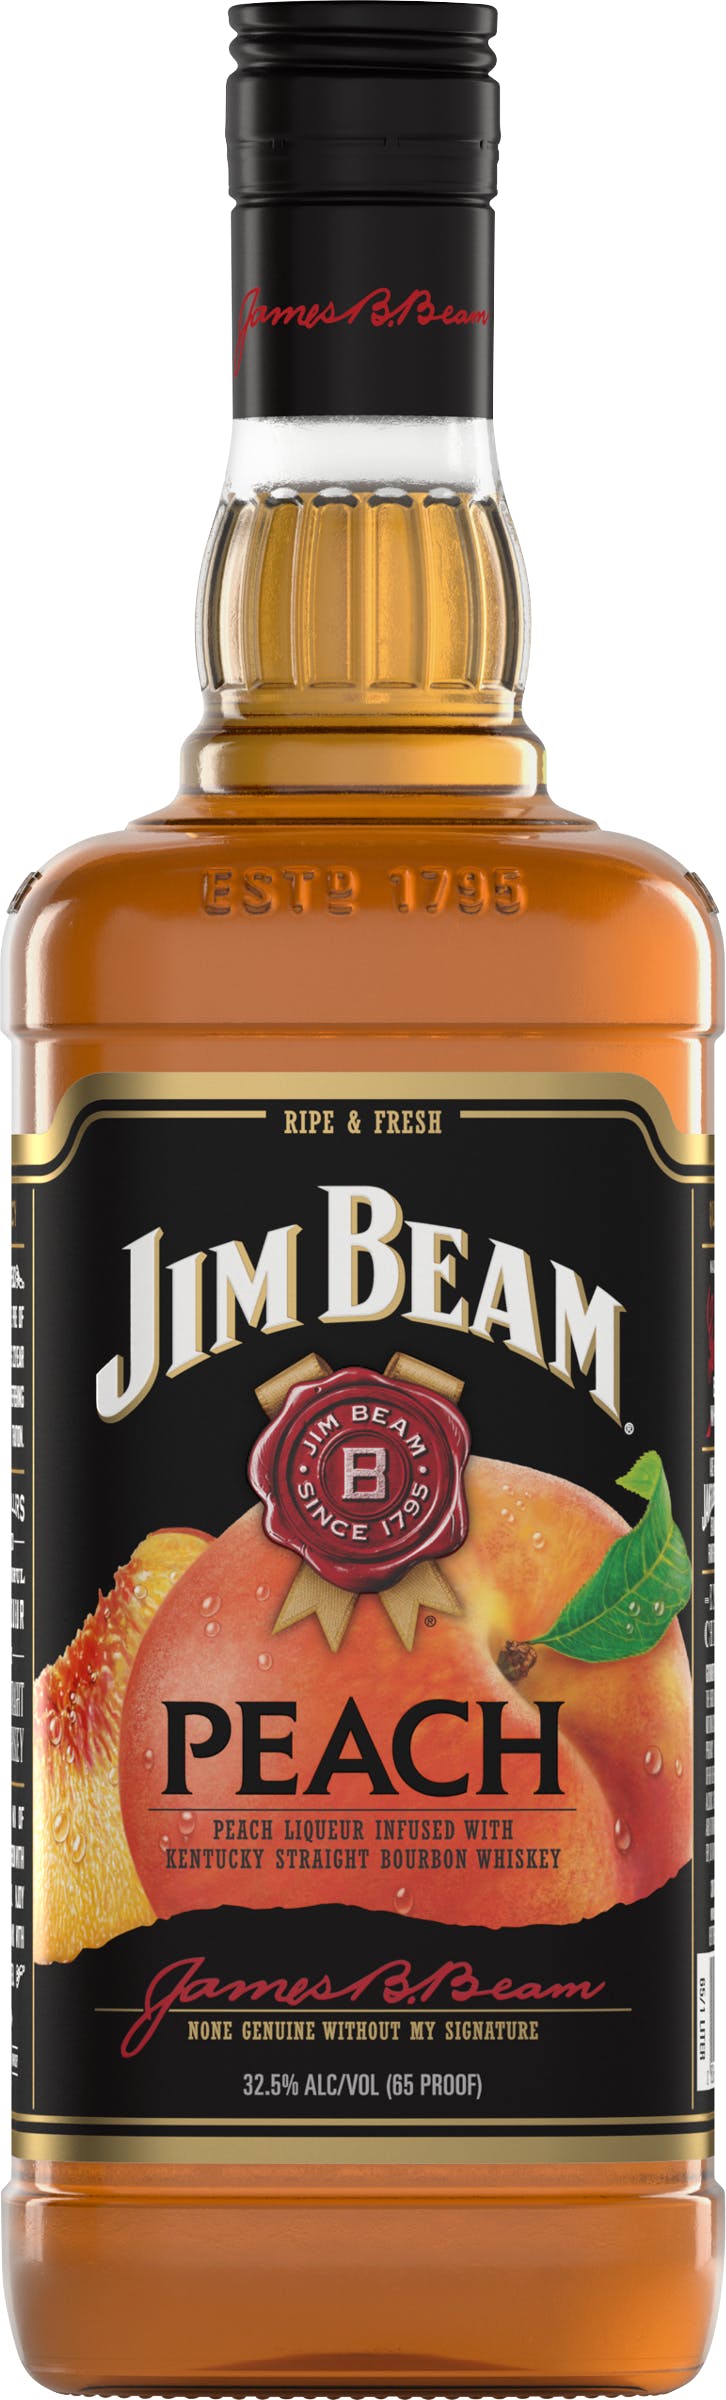 Jim Beam Orange 750ml - Luekens Wine & Spirits